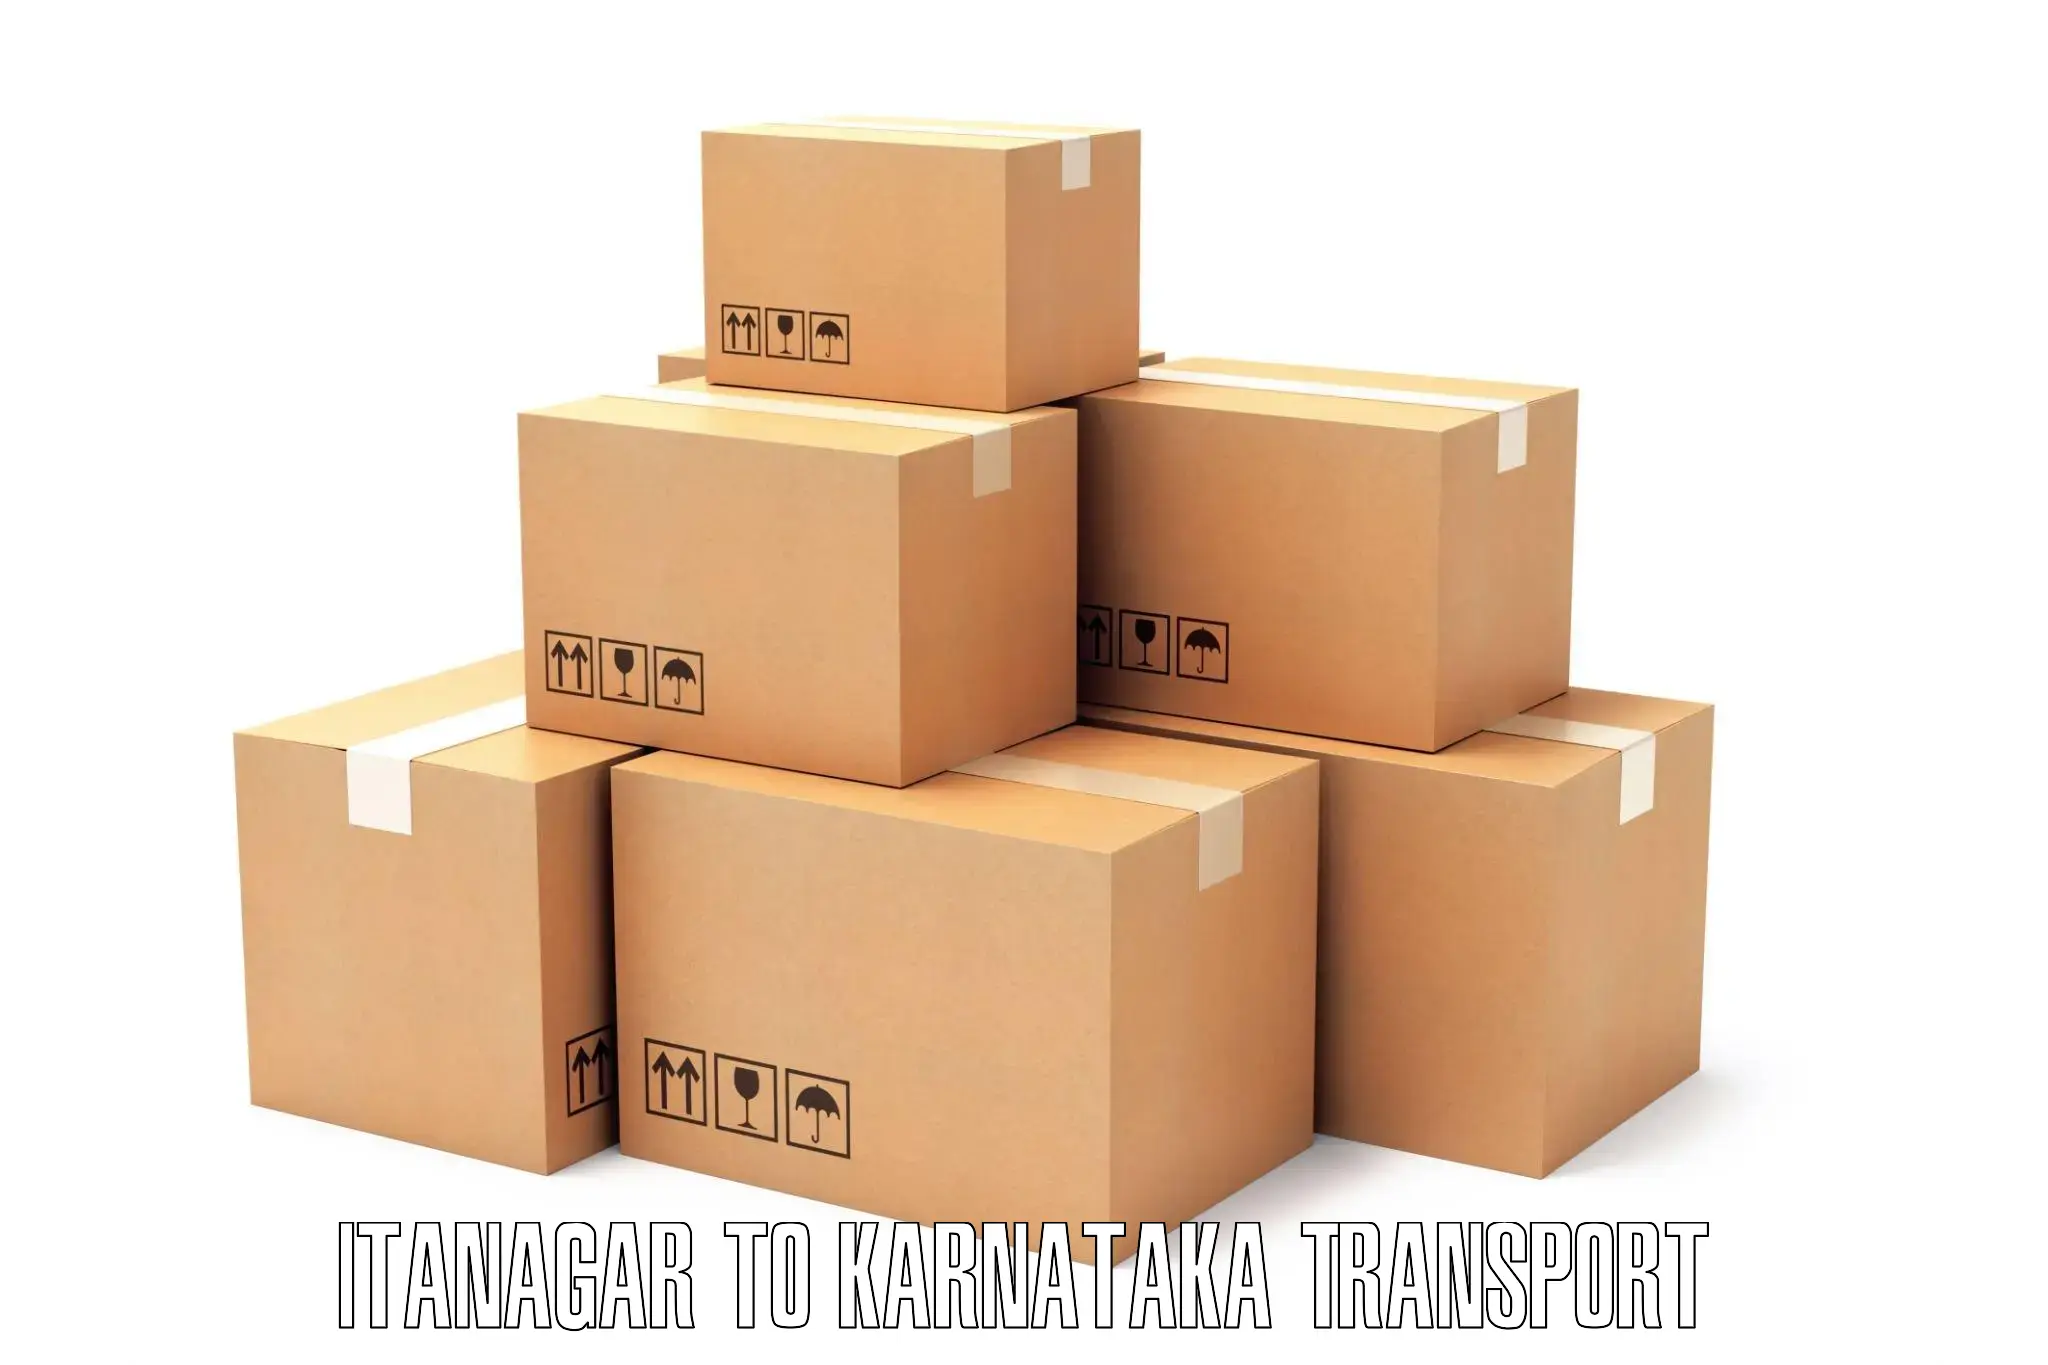 Vehicle parcel service Itanagar to Khanapur Karnataka